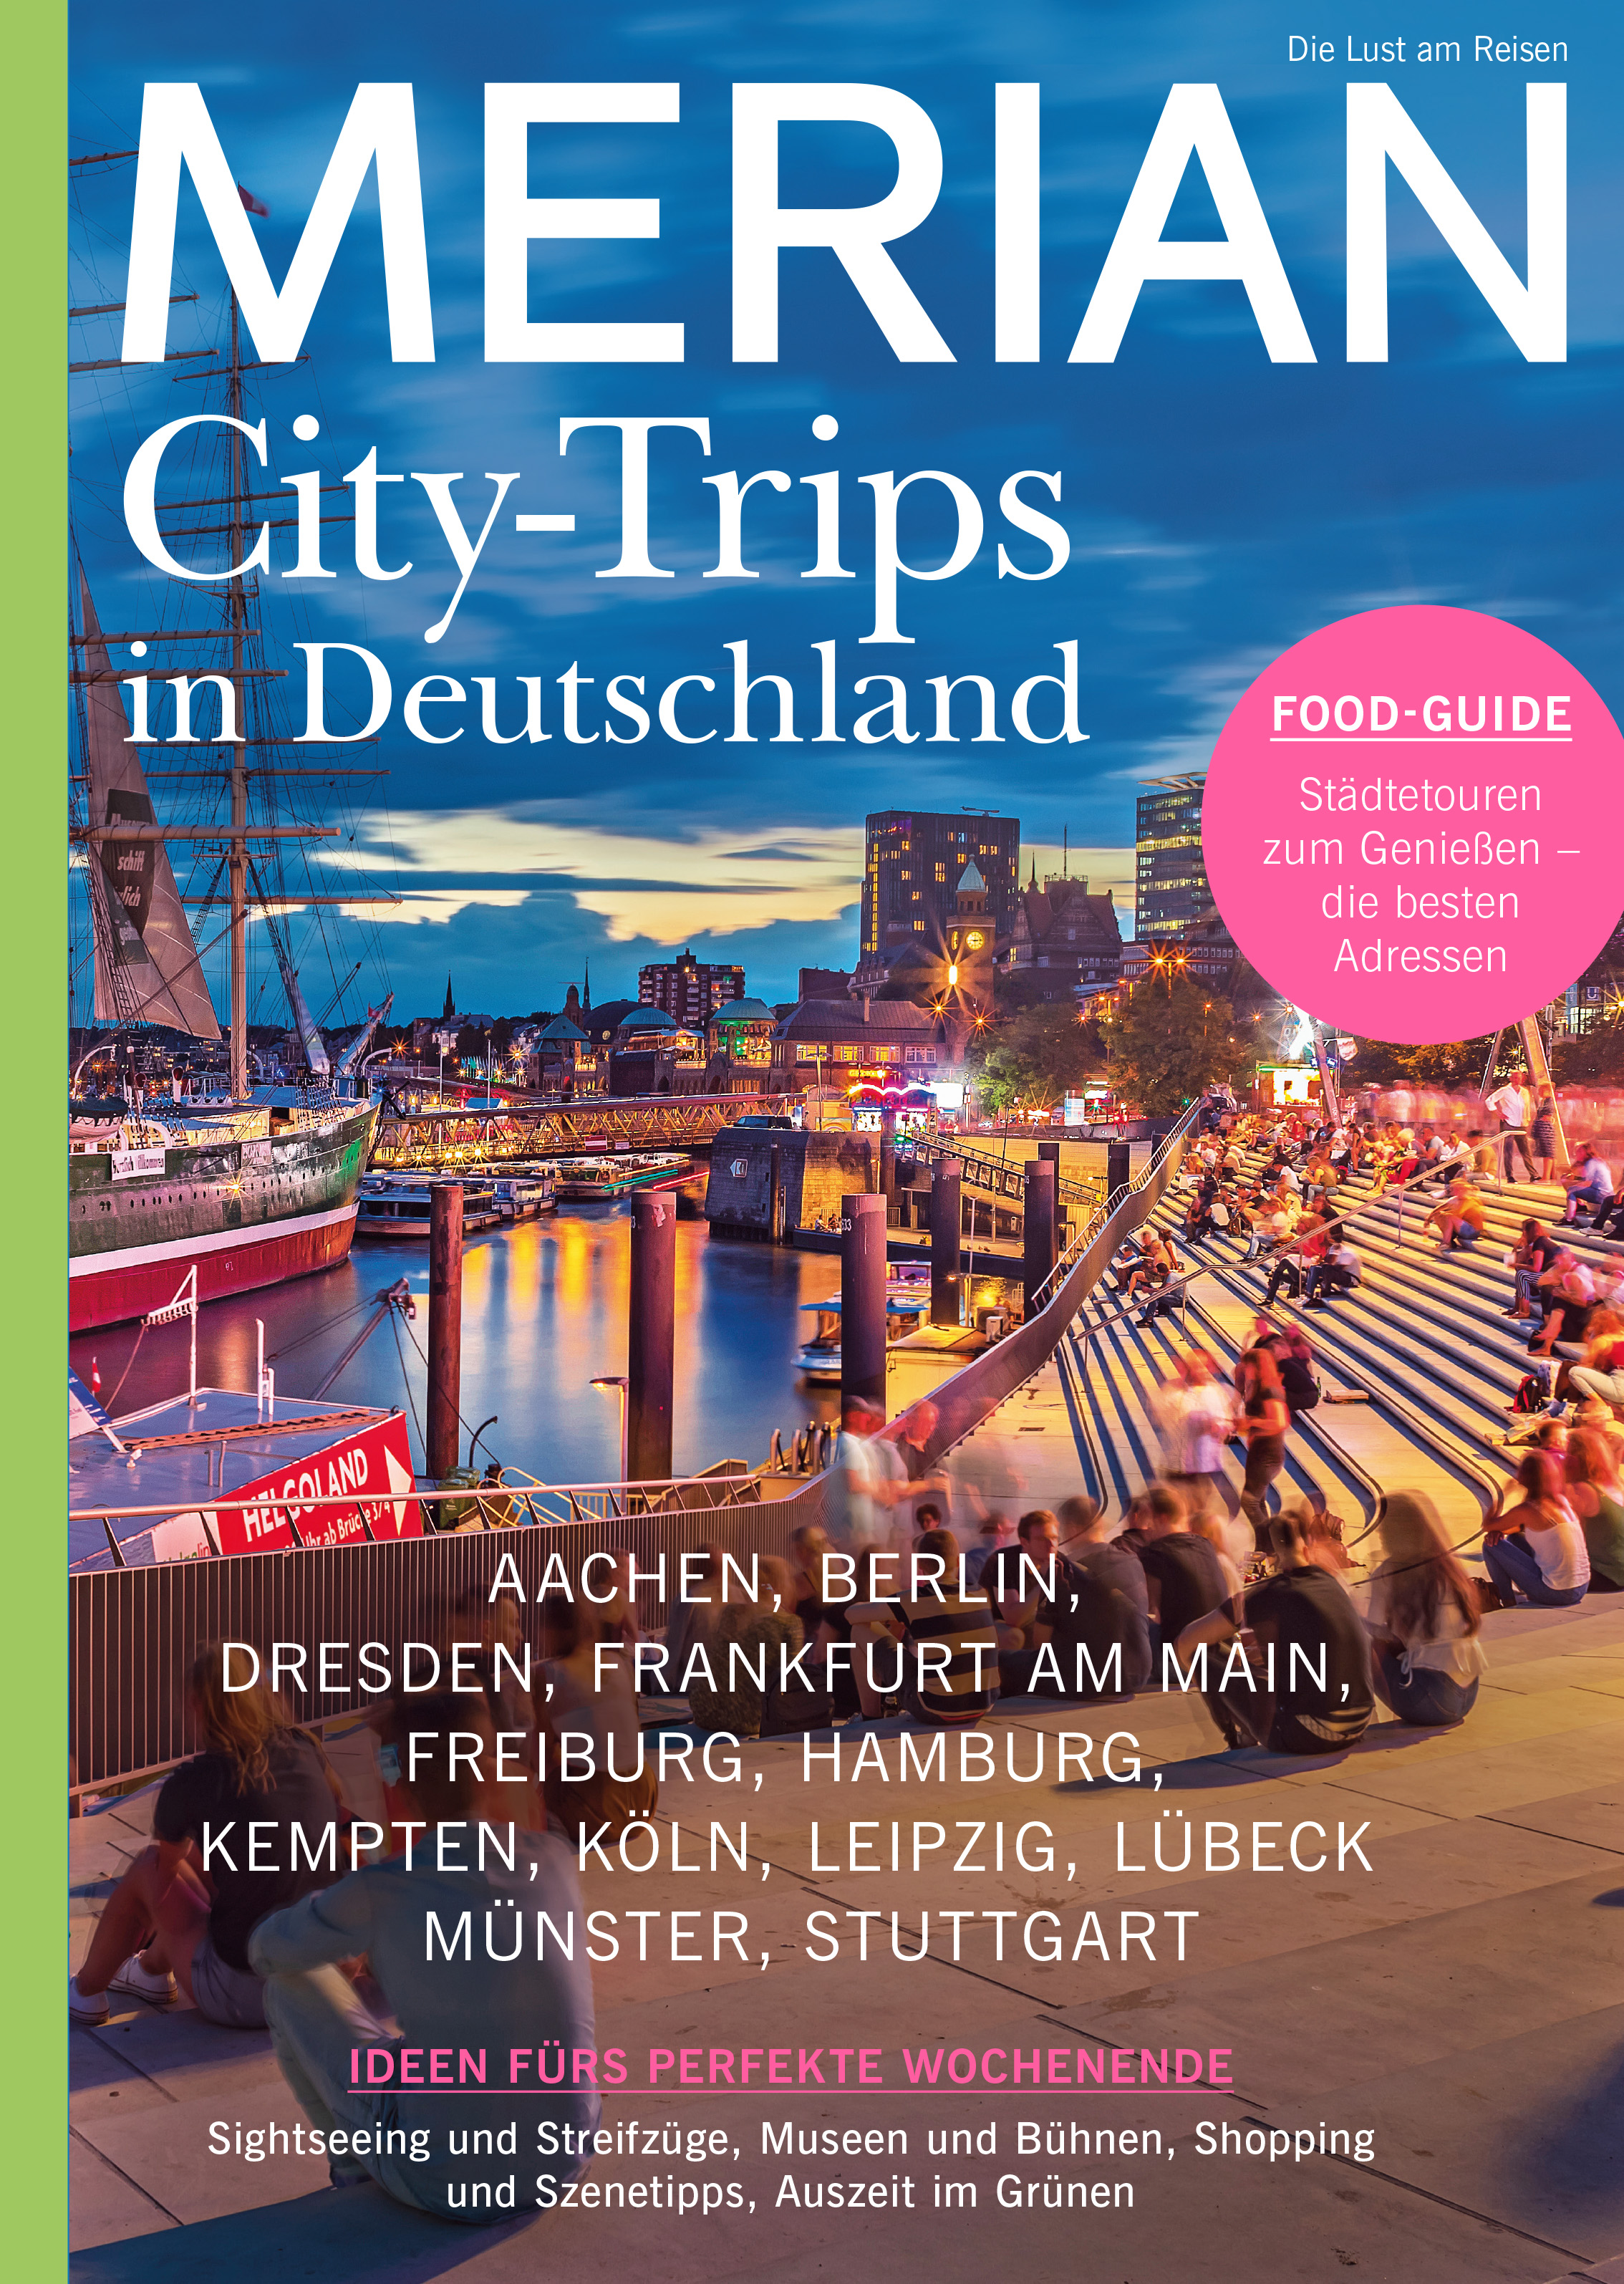 MERIAN 11/2021 City Trips in Deutschland 